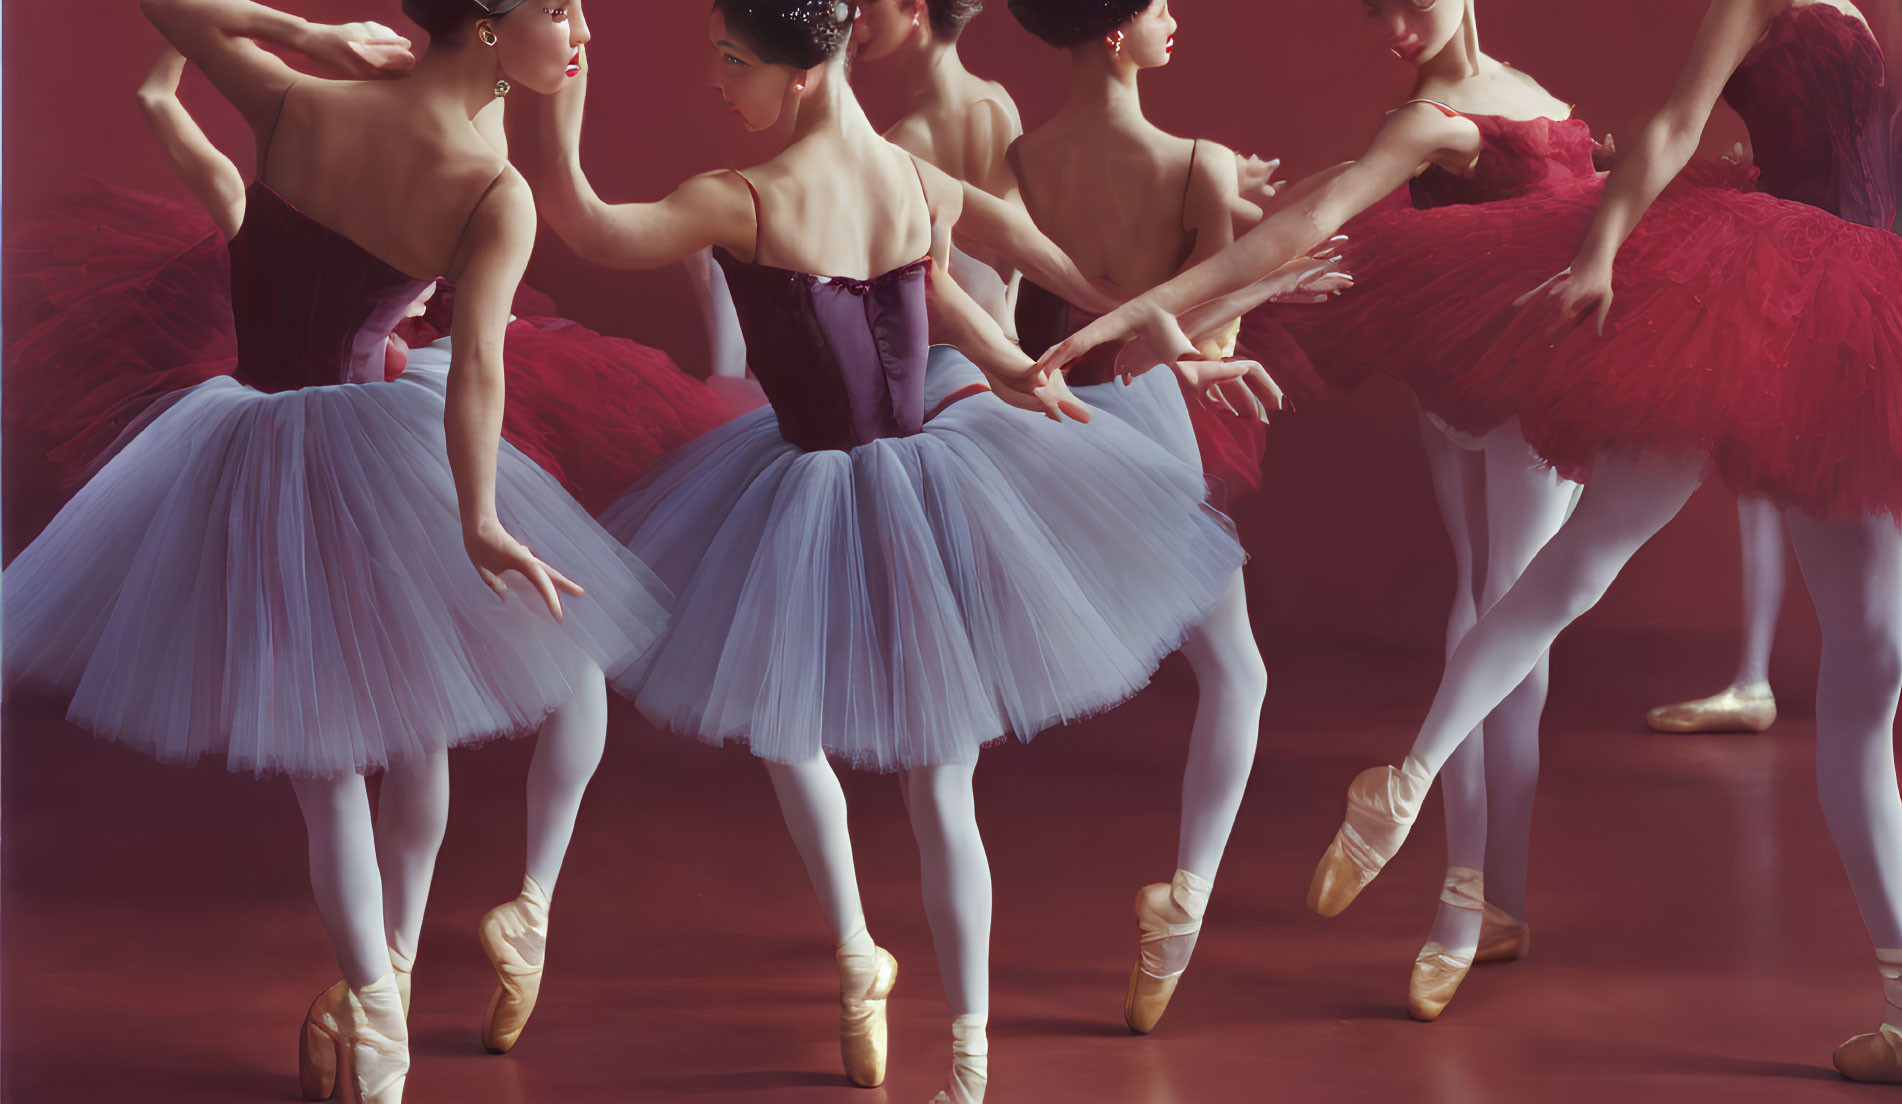 Elegant ballerinas in tutus showcasing graceful postures and attire